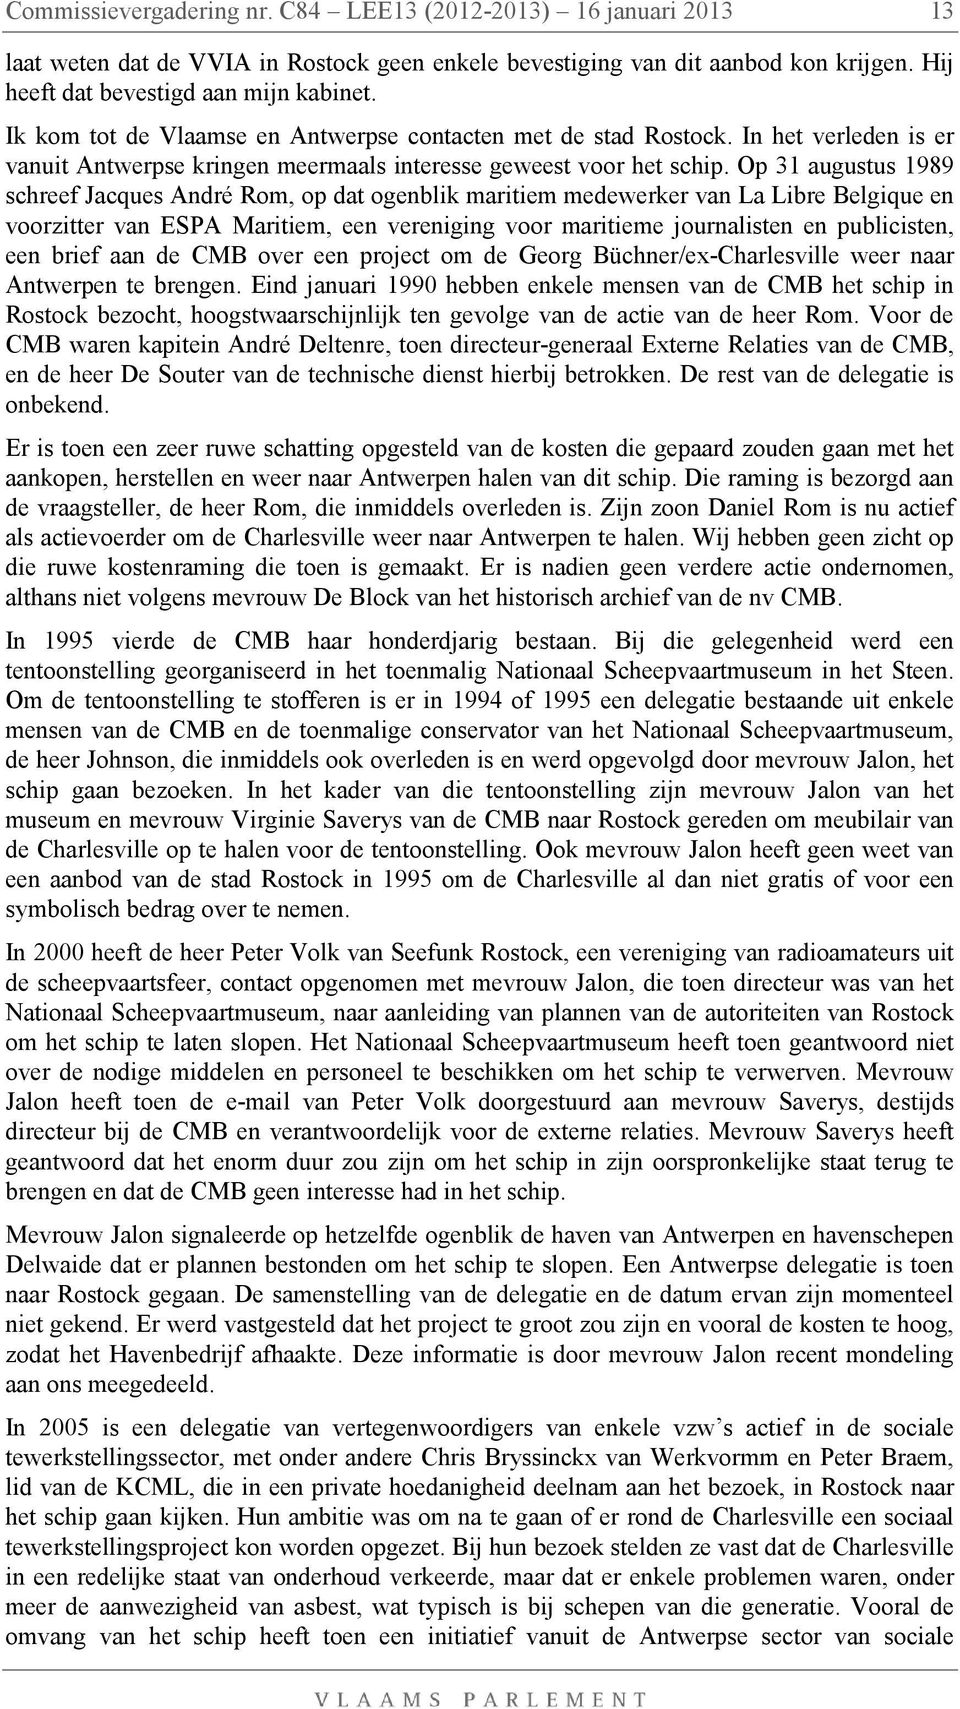 Op 31 augustus 1989 schreef Jacques André Rom, op dat ogenblik maritiem medewerker van La Libre Belgique en voorzitter van ESPA Maritiem, een vereniging voor maritieme journalisten en publicisten,